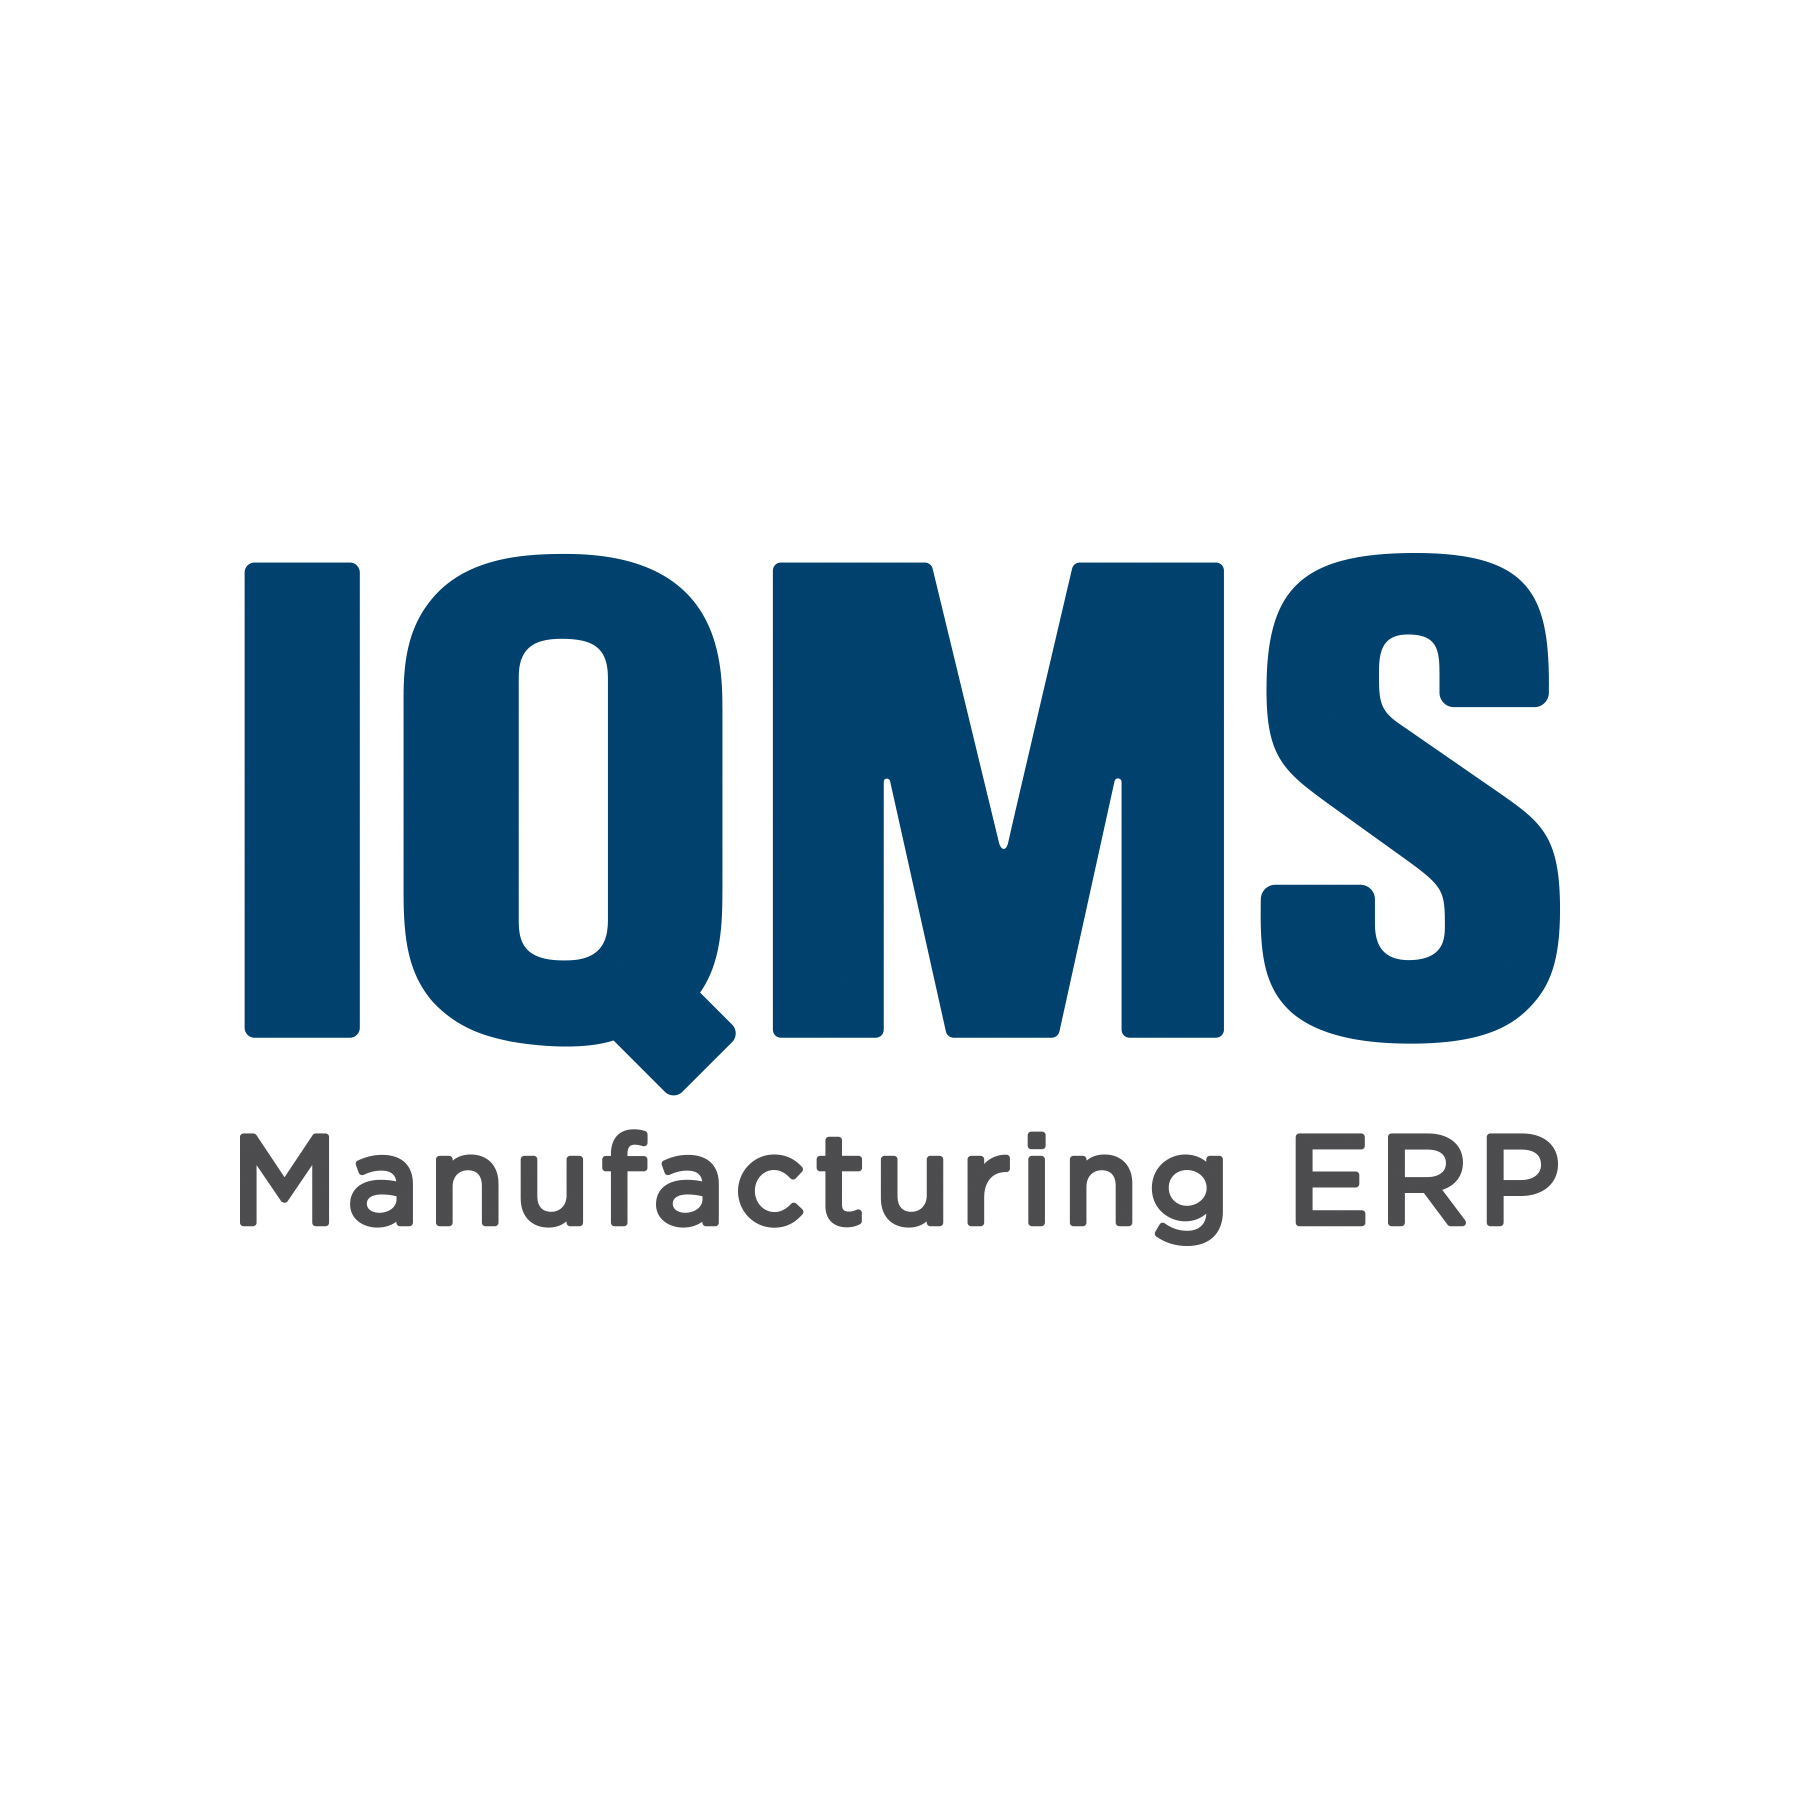 1800 Logo - IQMS logo.png